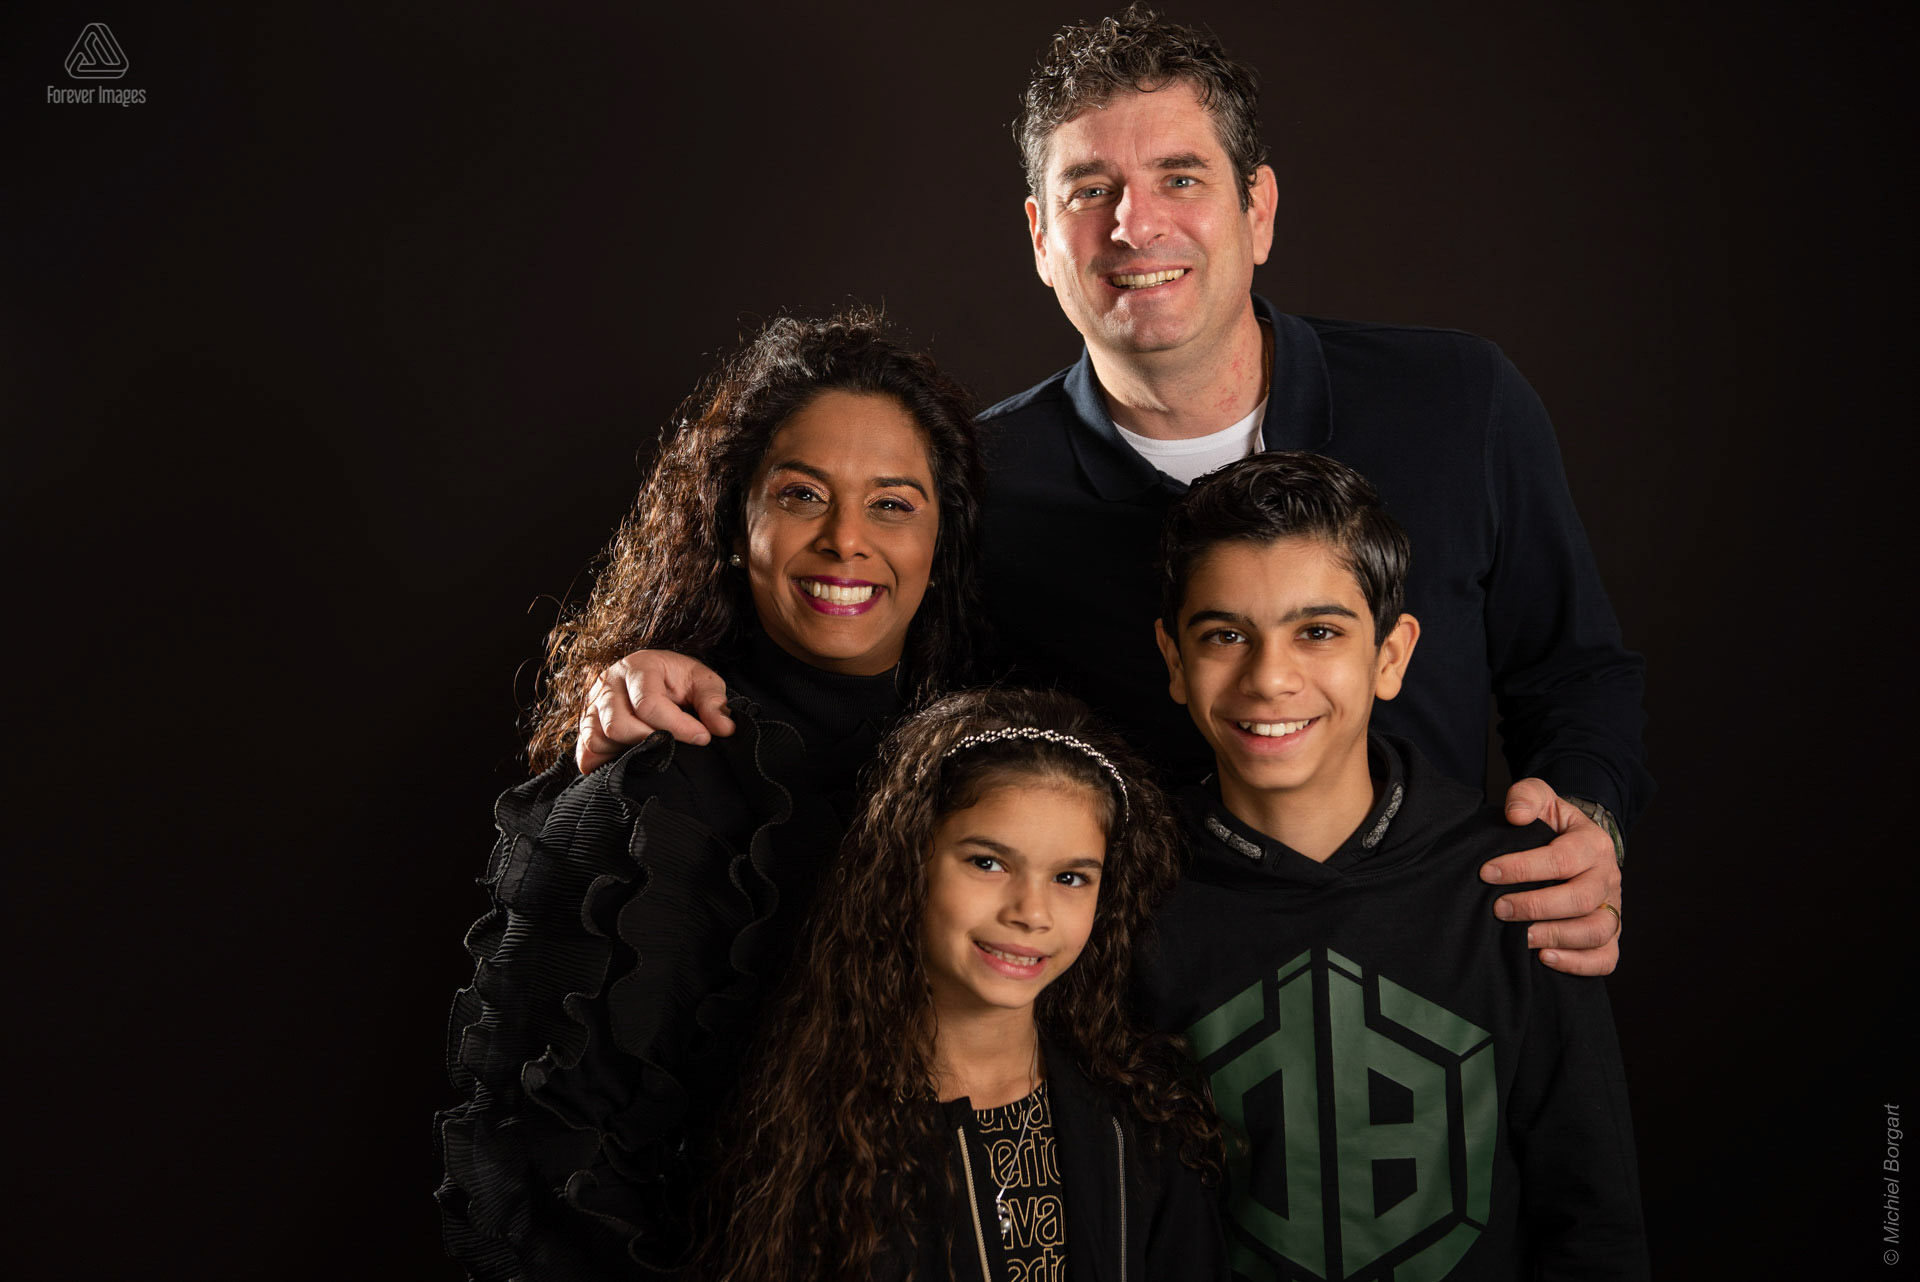 Portretfoto Familieportret zwarte achtergrond | Sandy Mischa Chhaya Noam Grishaver | Portretfotograaf Michiel Borgart - Forever Images.